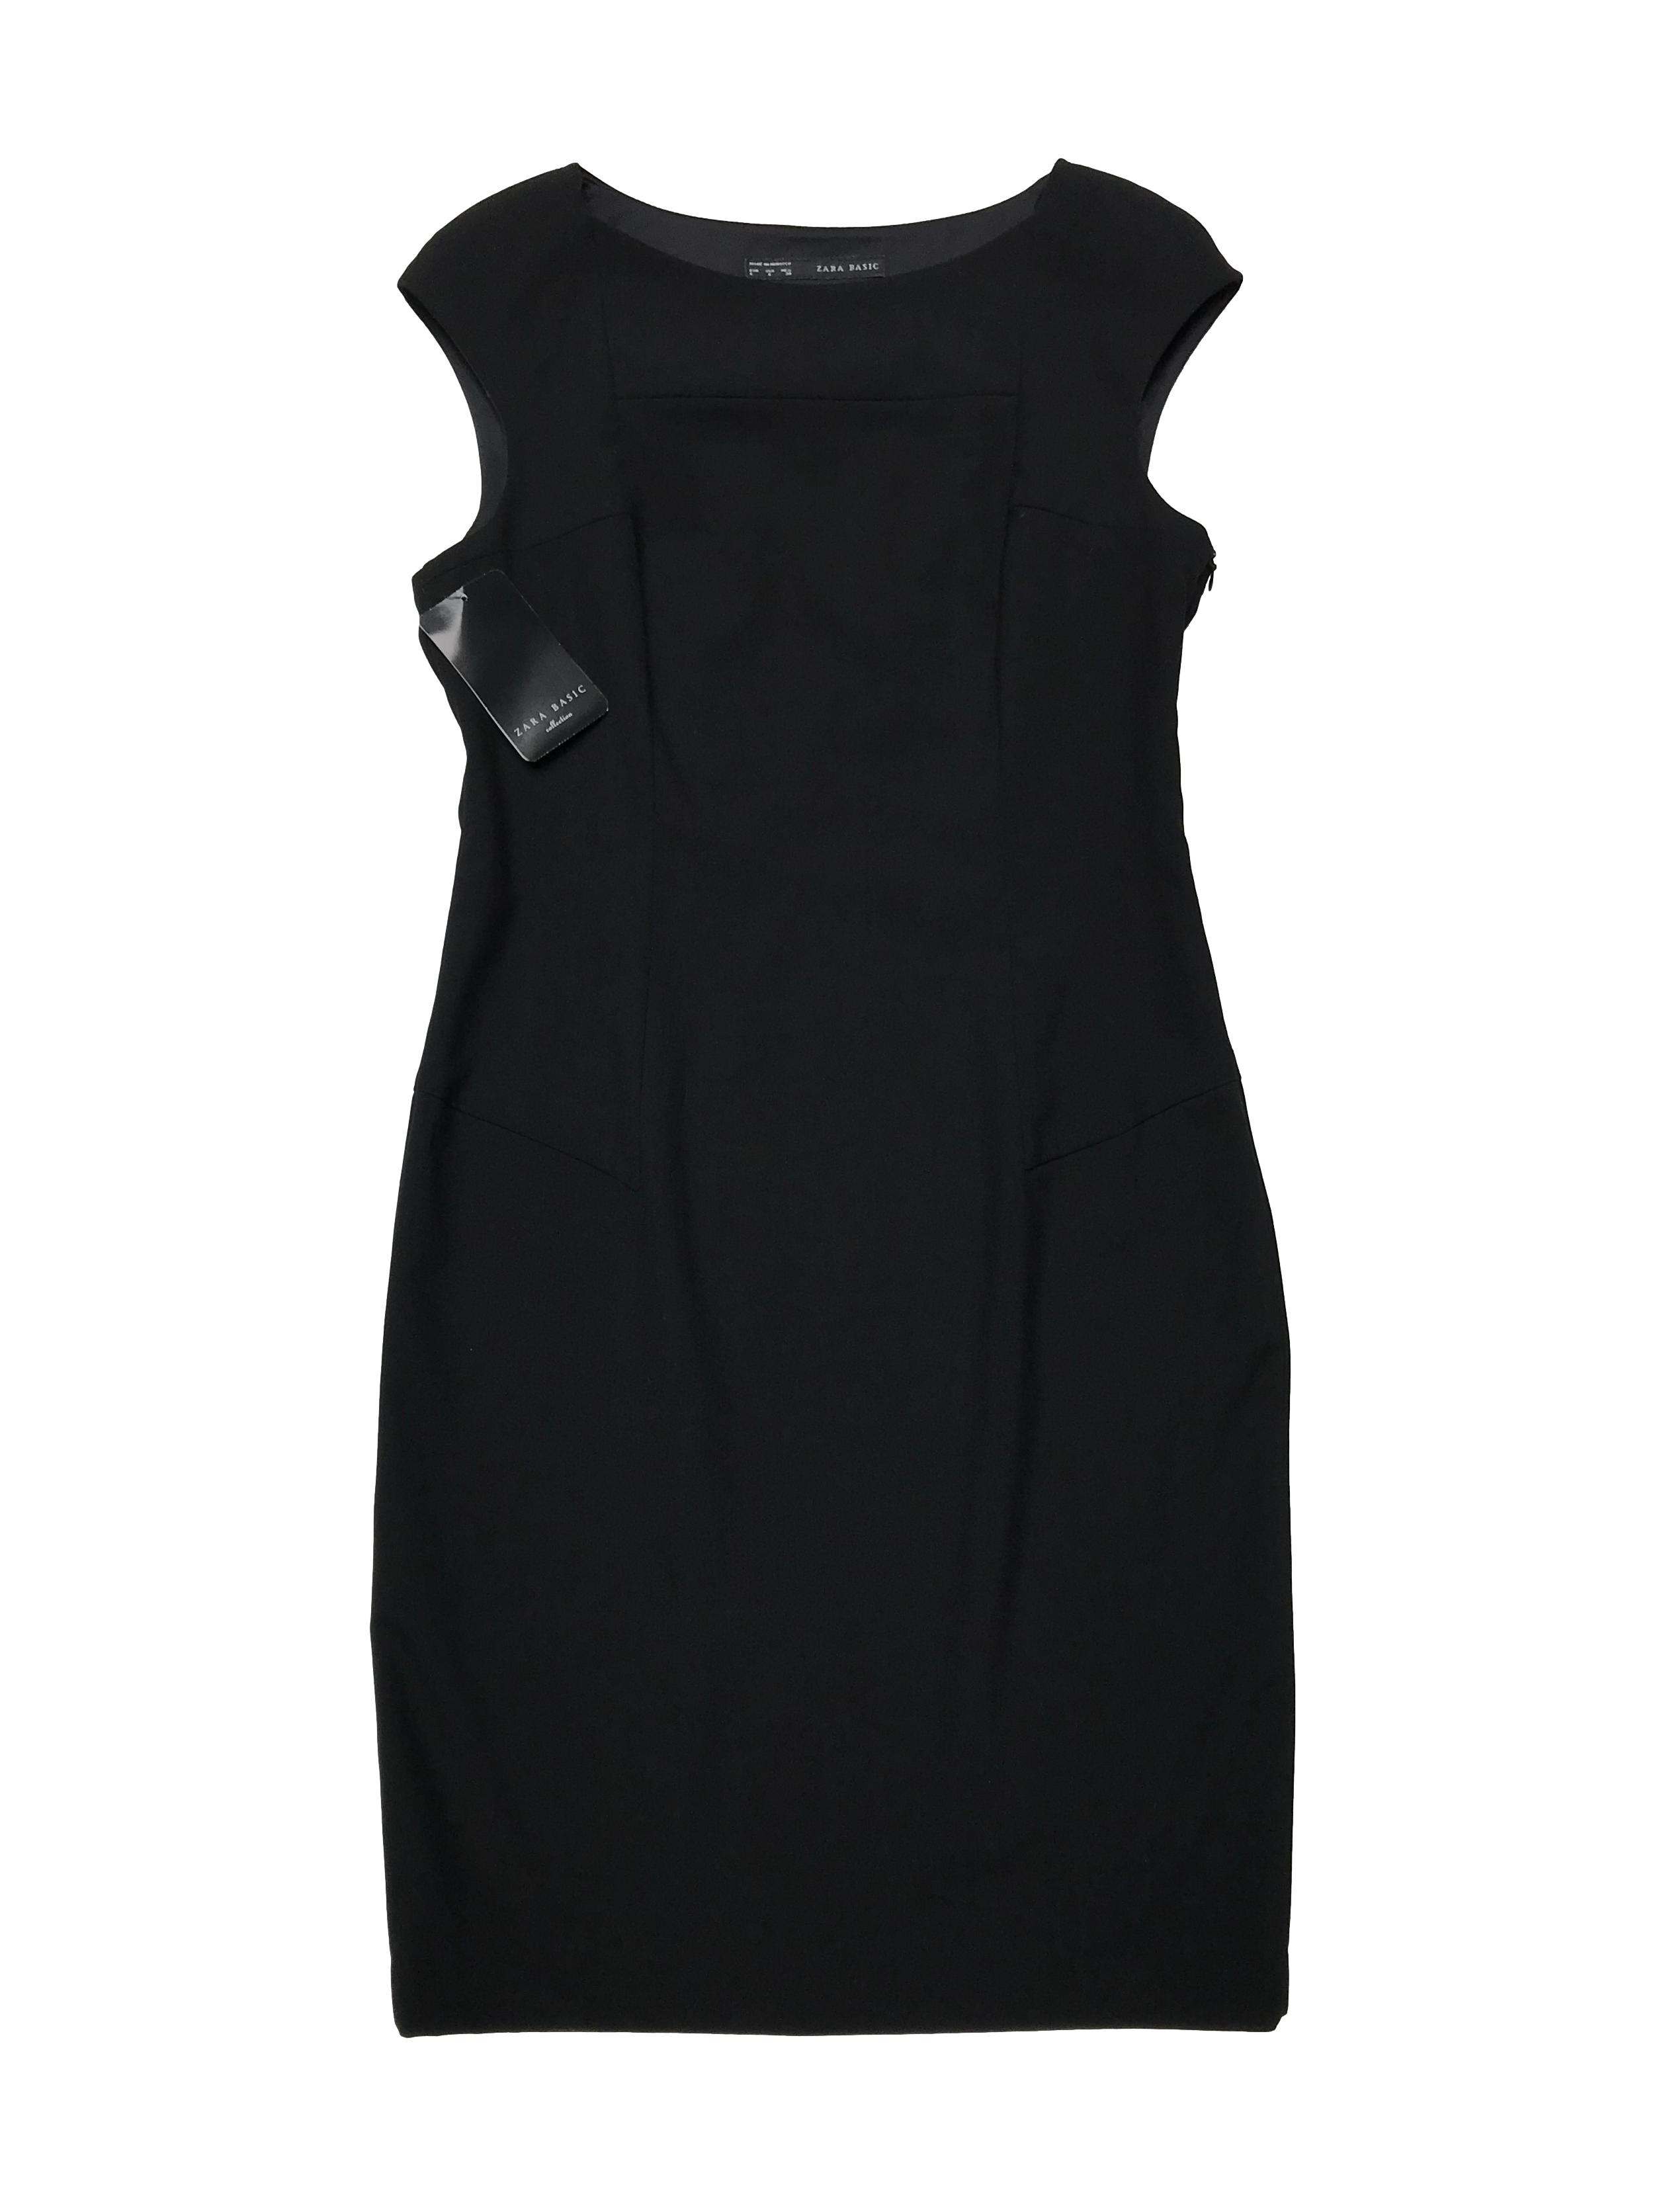 Vestido Zara negro tipo sastre, con cierre lateral y abertura posterior en la basta. Busto 98cm Largo 95cm. Nuevo con etiqueta.